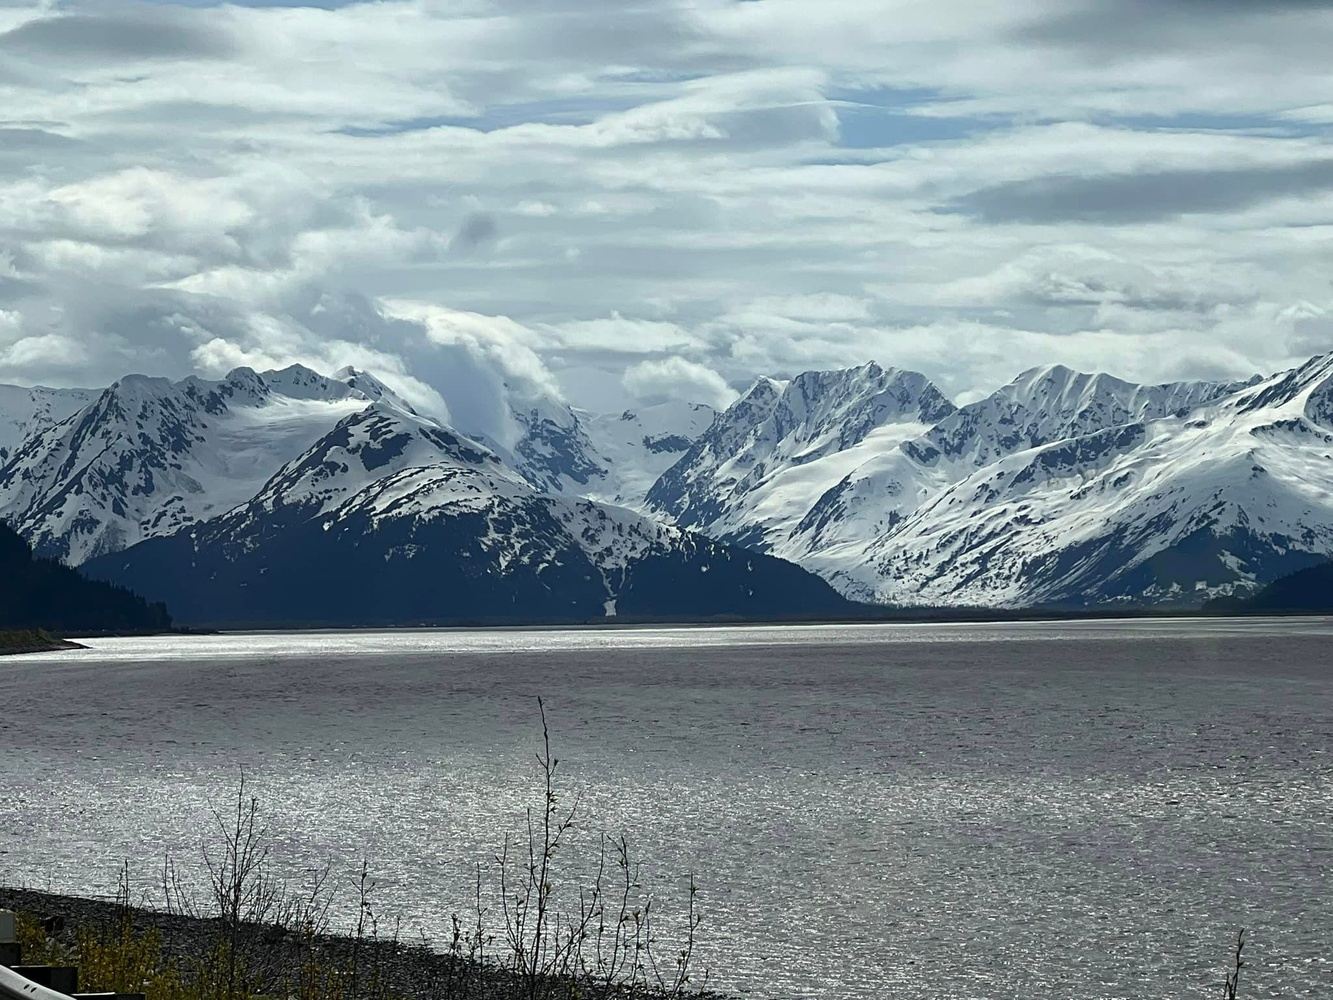 Voyage of the Glaciers, Amazing Alaska!